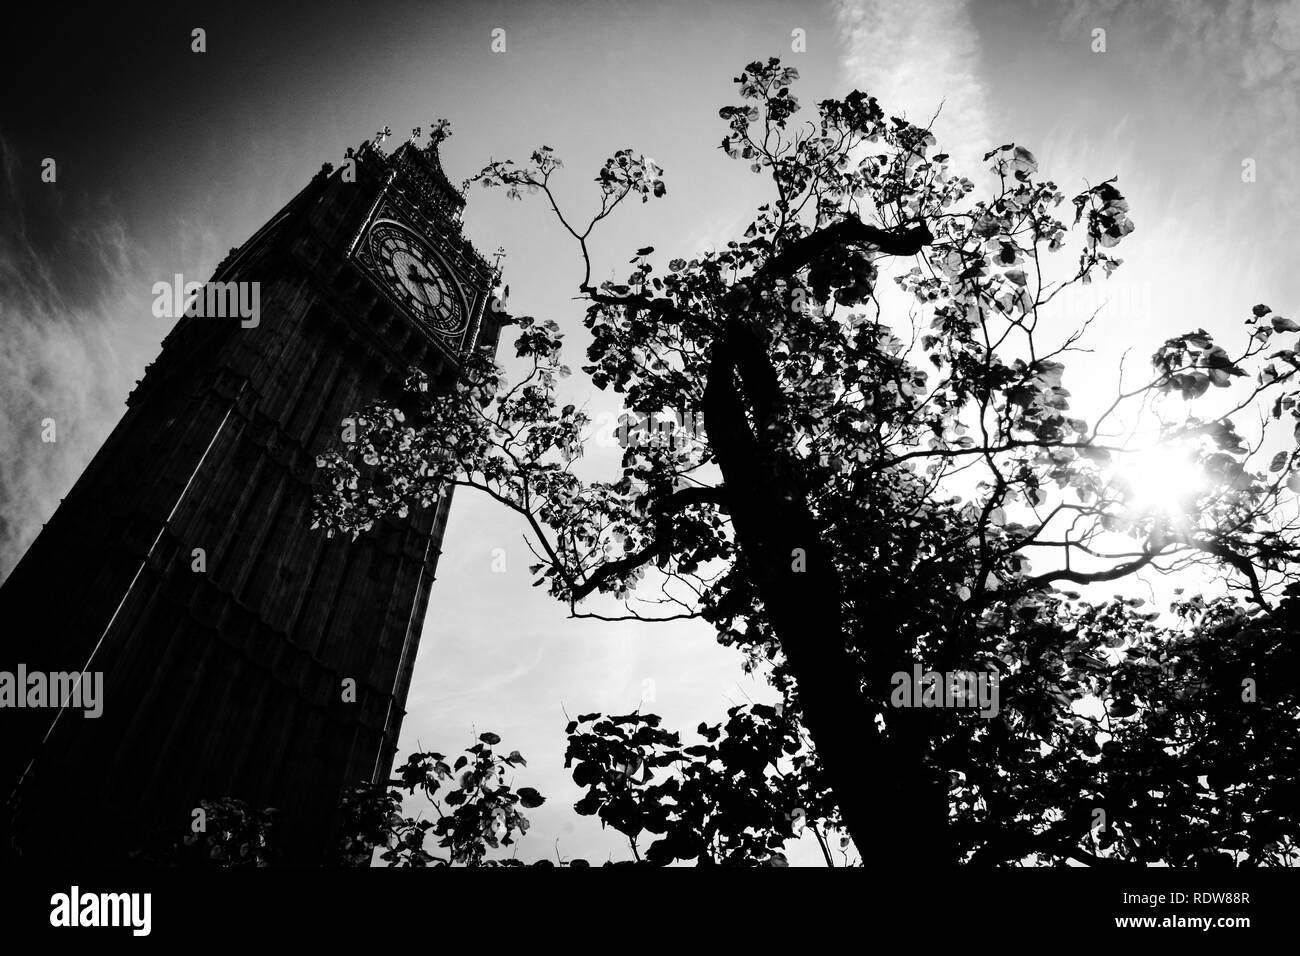 La photographie noir et blanc de l'Elizabeth Tower, communément connu sous le nom de Big Ben, au Palais de Westminster à Londres, Royaume-Uni Banque D'Images